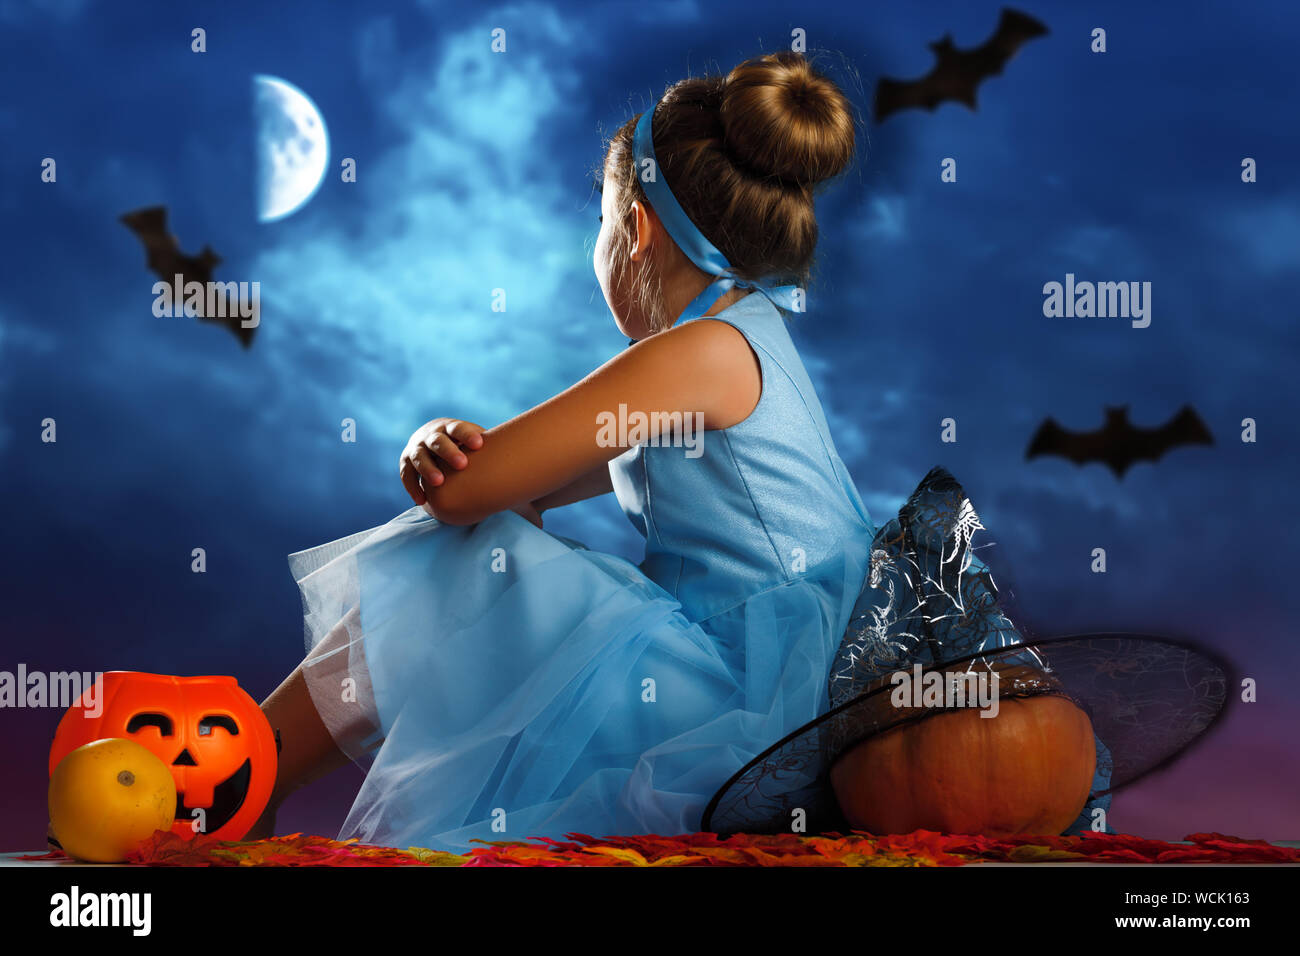 Festa di Halloween. Una bambina vestita come la principessa Cenerentola si siede con la schiena circondato da zucche e guarda alla sera il cielo illuminato dalla luna. Foto Stock